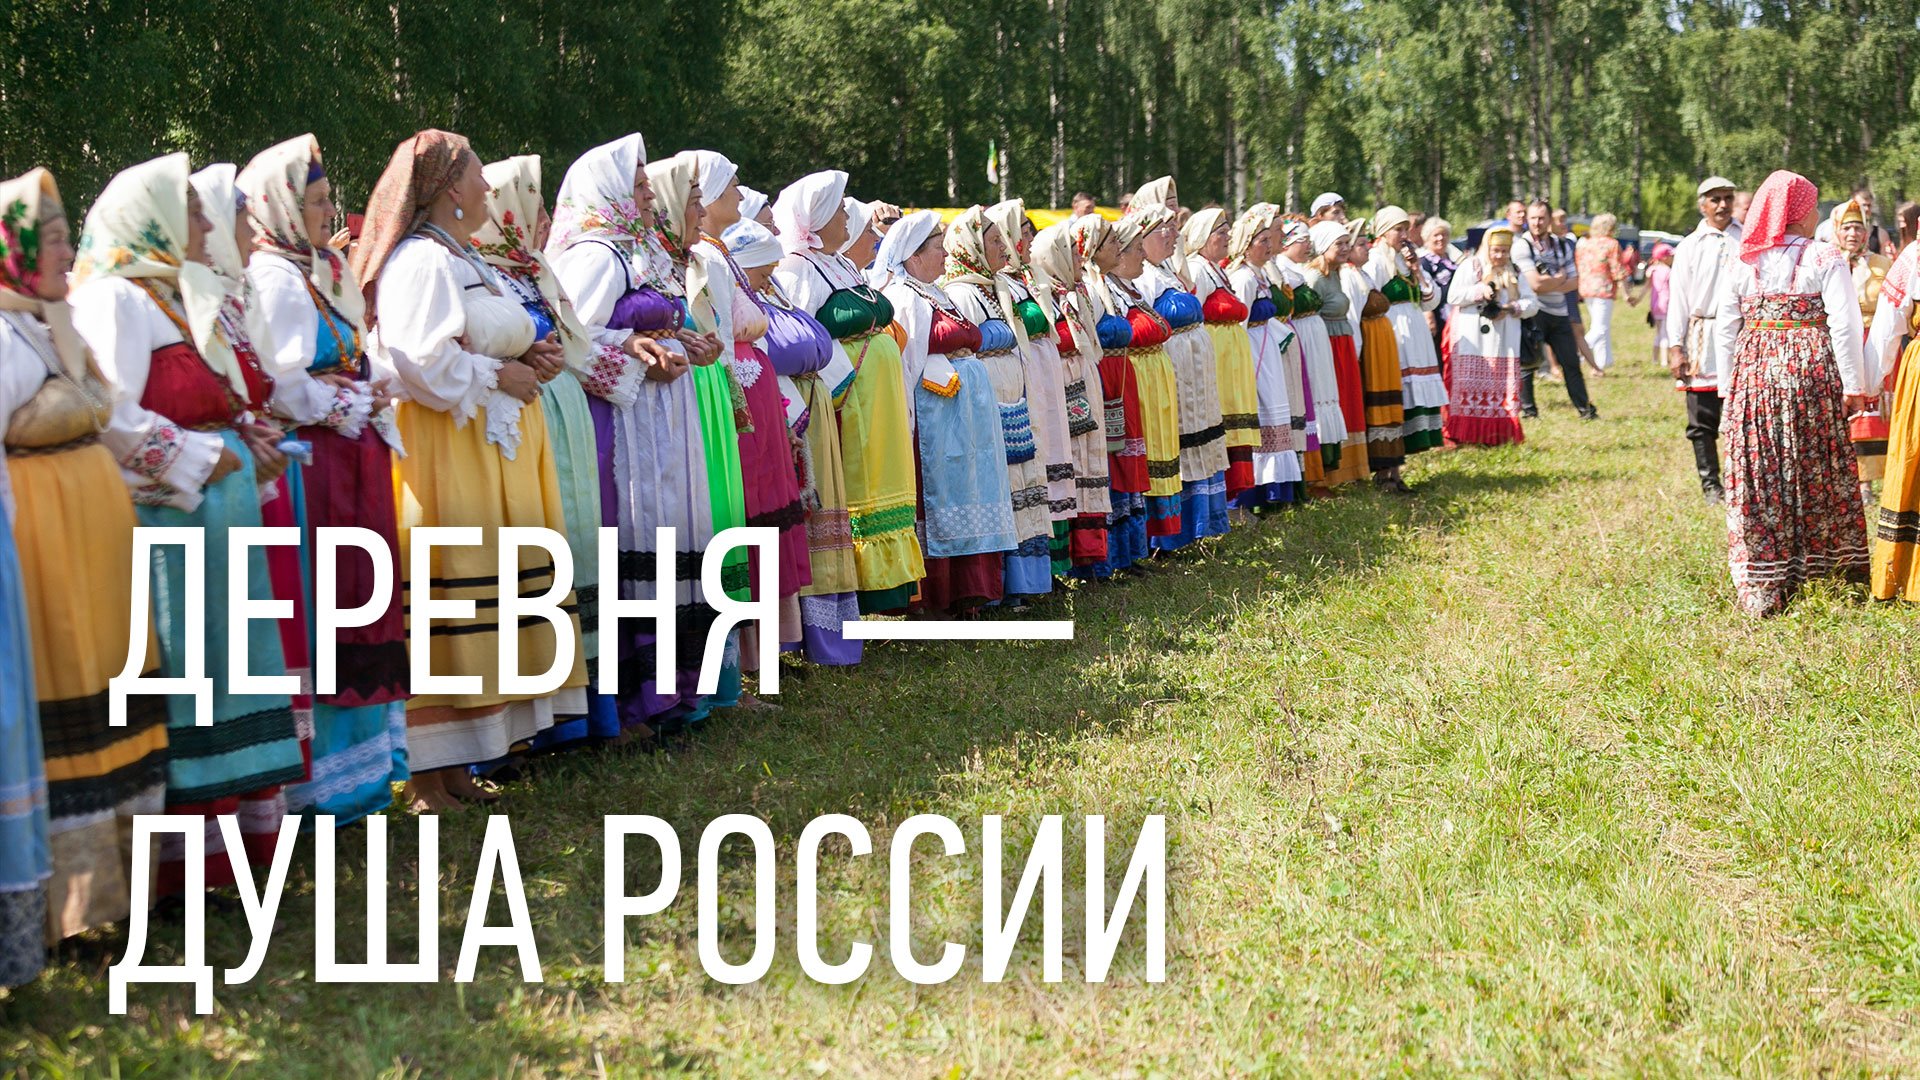 Деревня — душа России